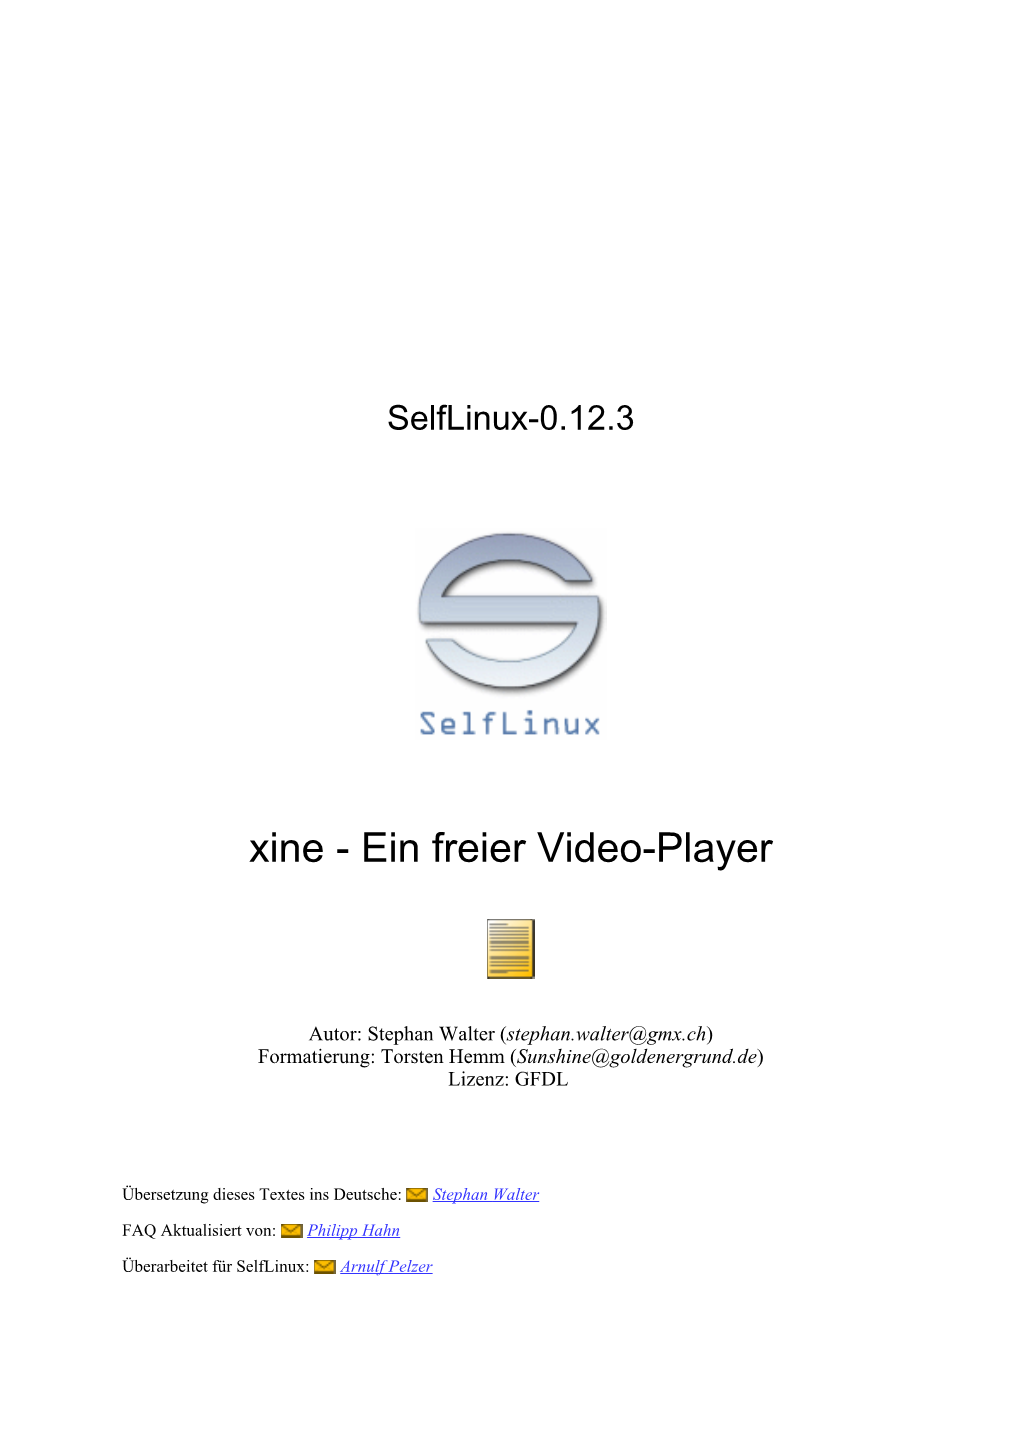 Xine - Ein Freier Video-Player